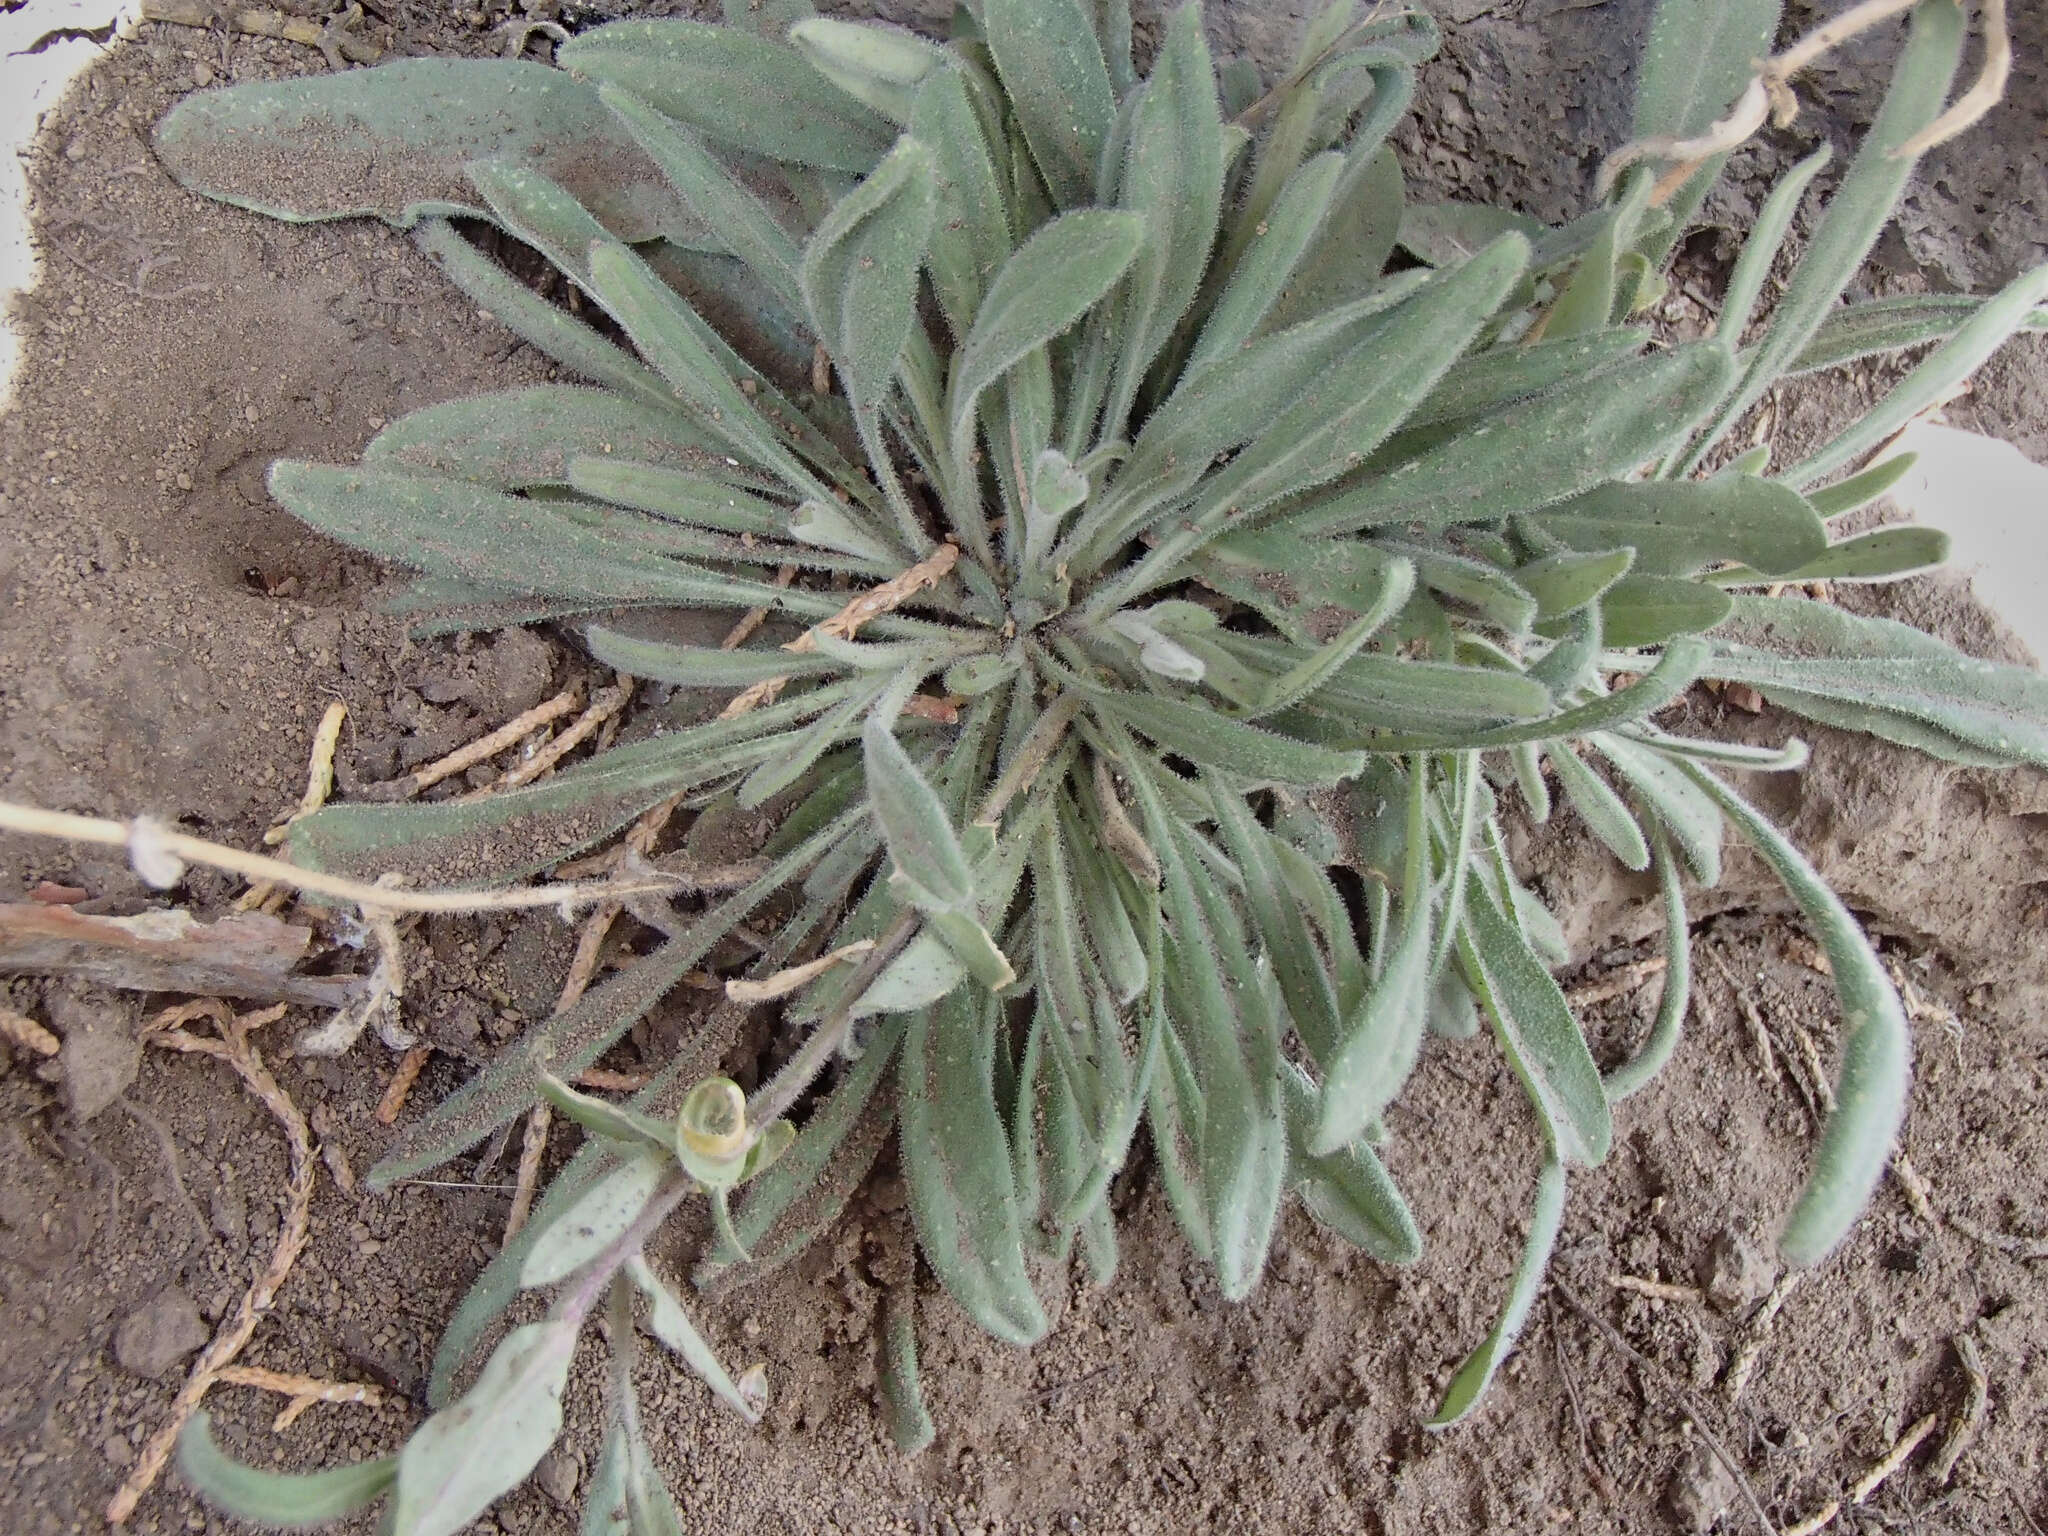 Sivun Boechera sparsiflora (Nutt.) Dorn kuva